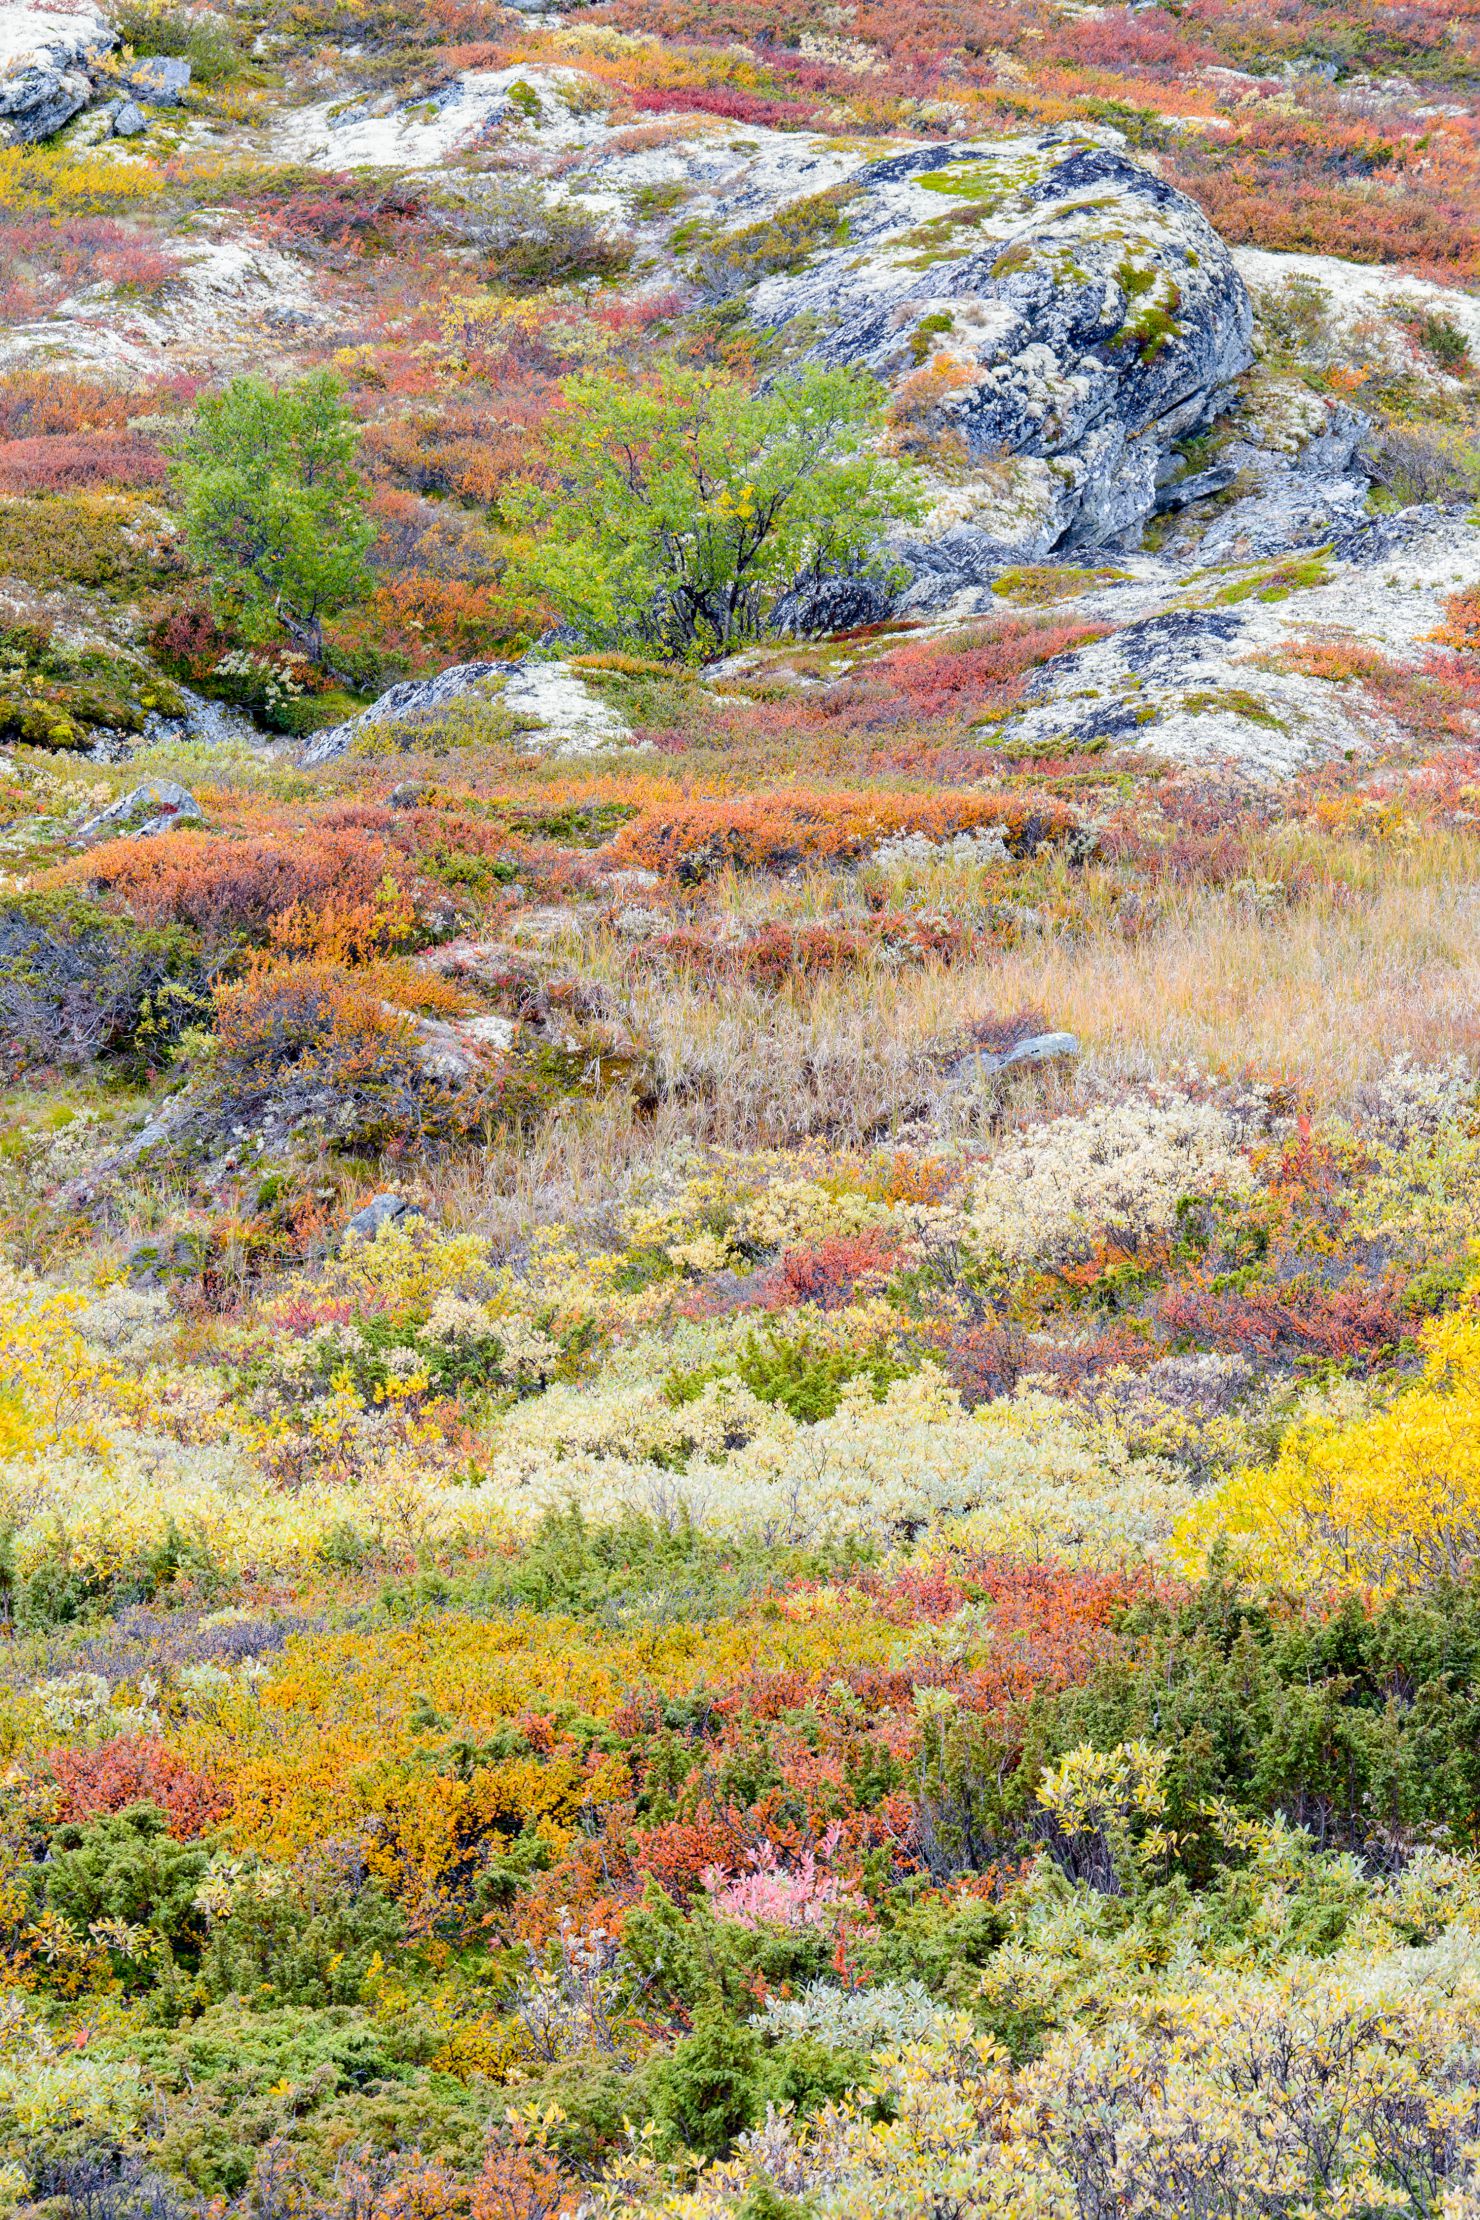 Autumn colours in tundra landscape